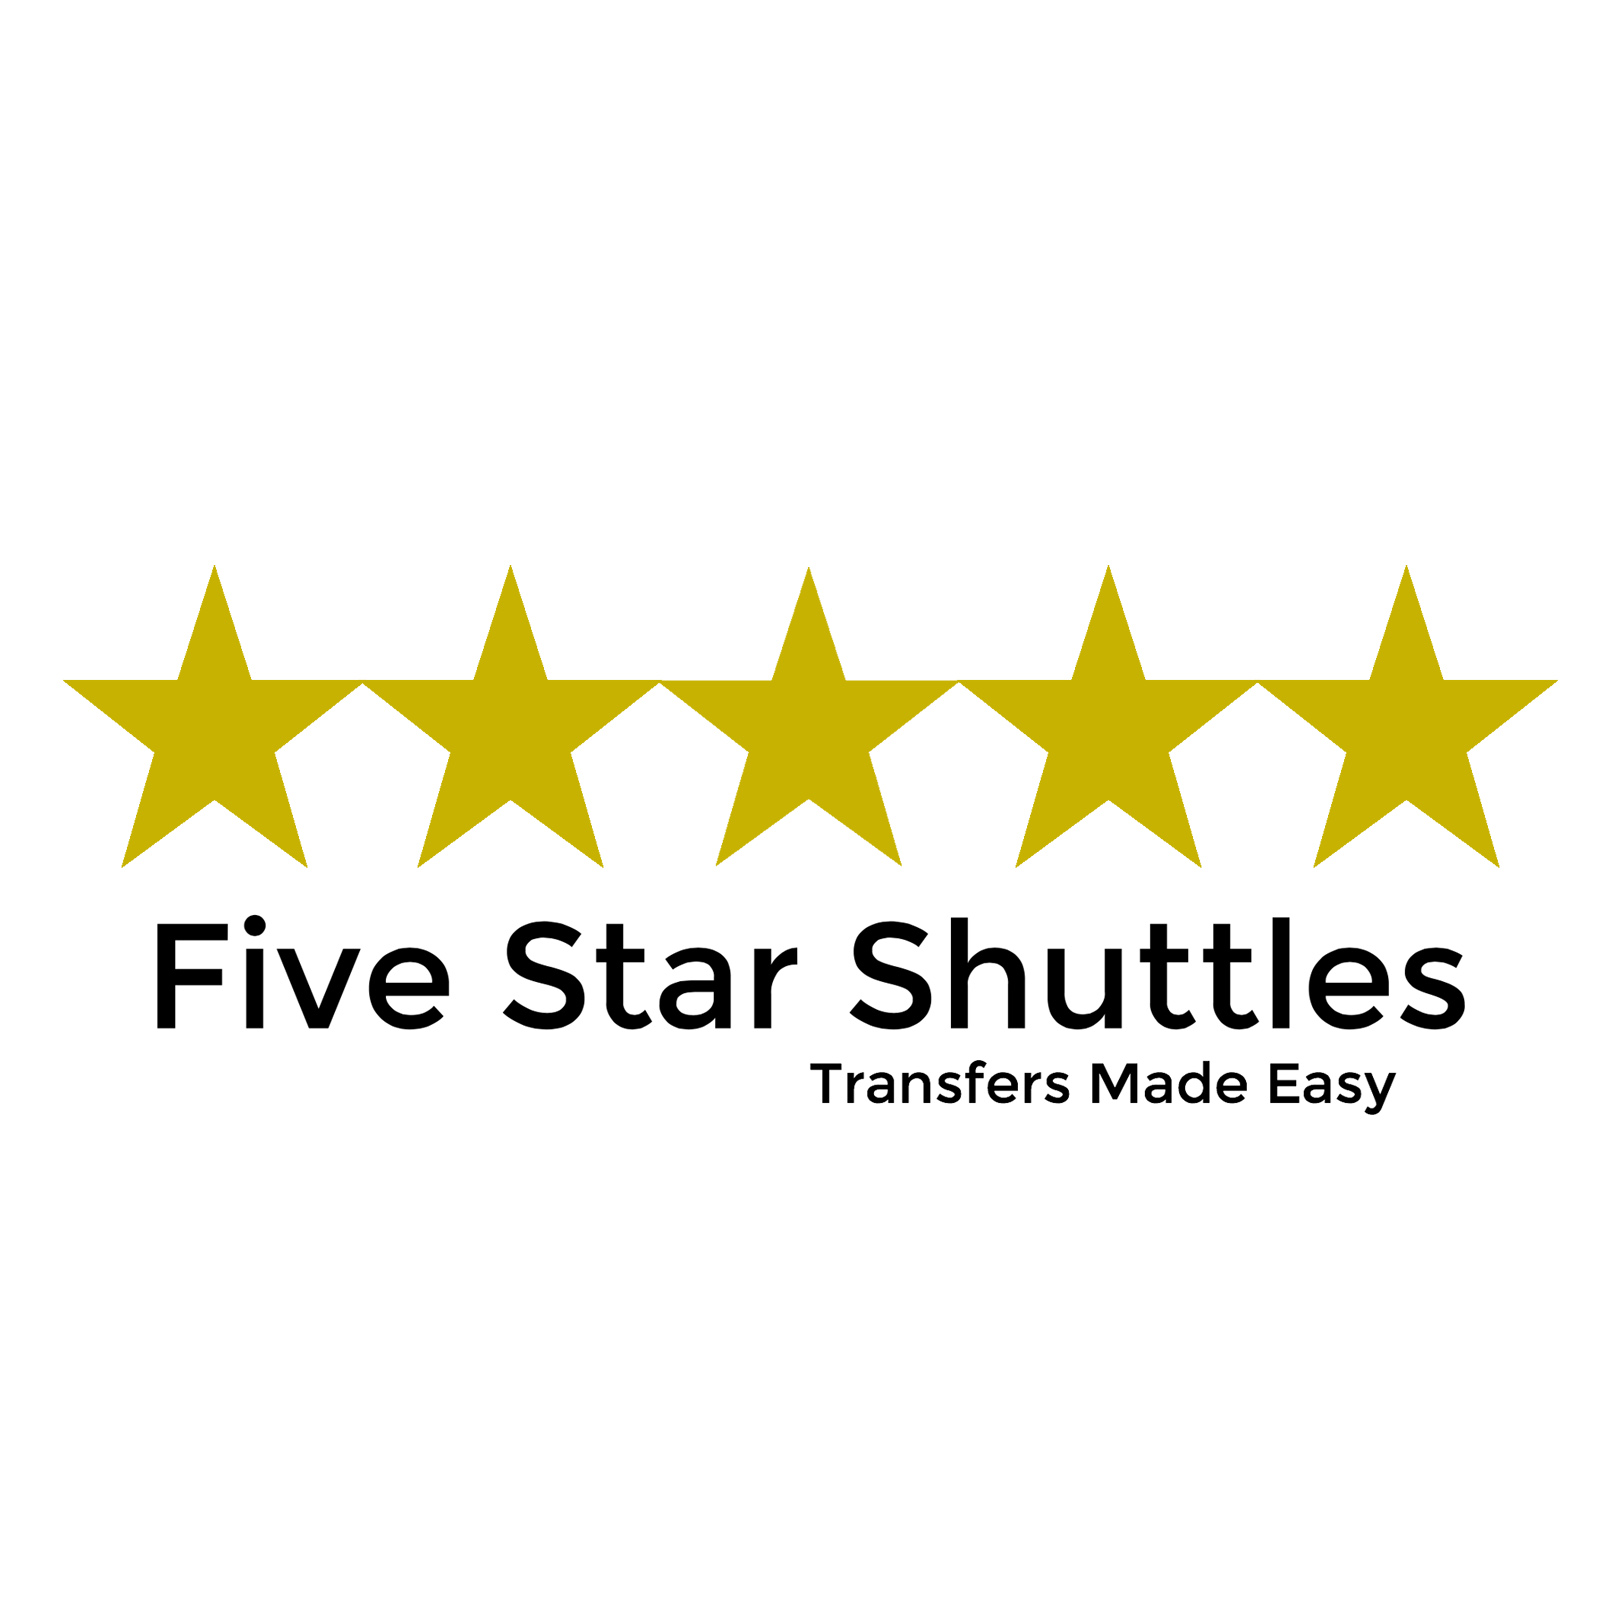 Five Star Shuttles